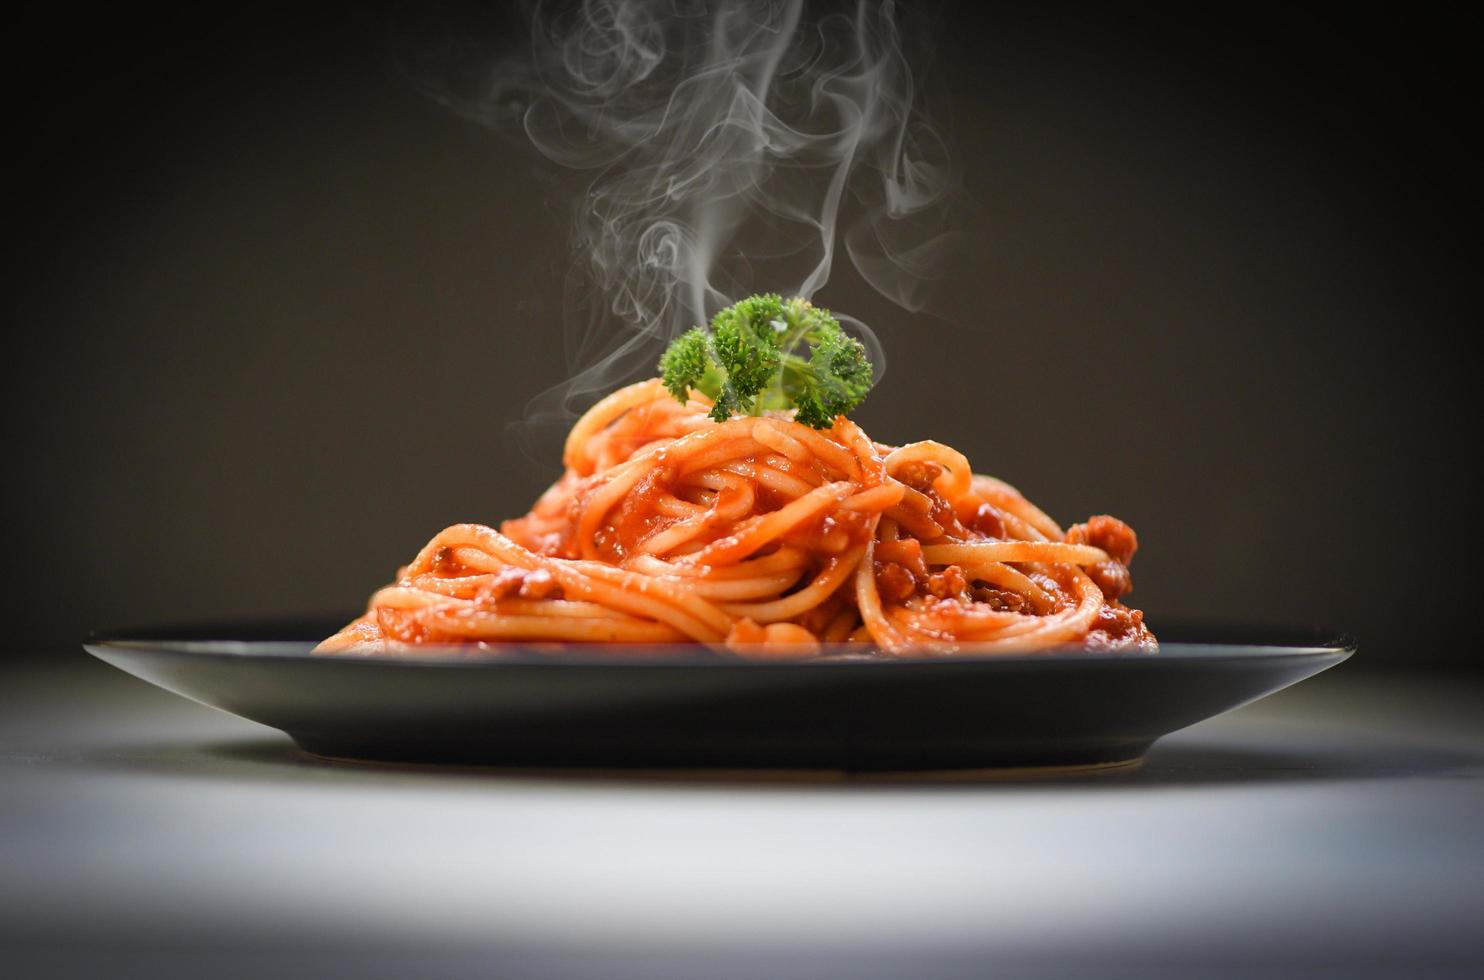 espaguete à bolonhesa em fundo preto espaguete italiano macarrão servido na chapa preta com molho de tomate e salsa no restaurante comida italiana e menu foto